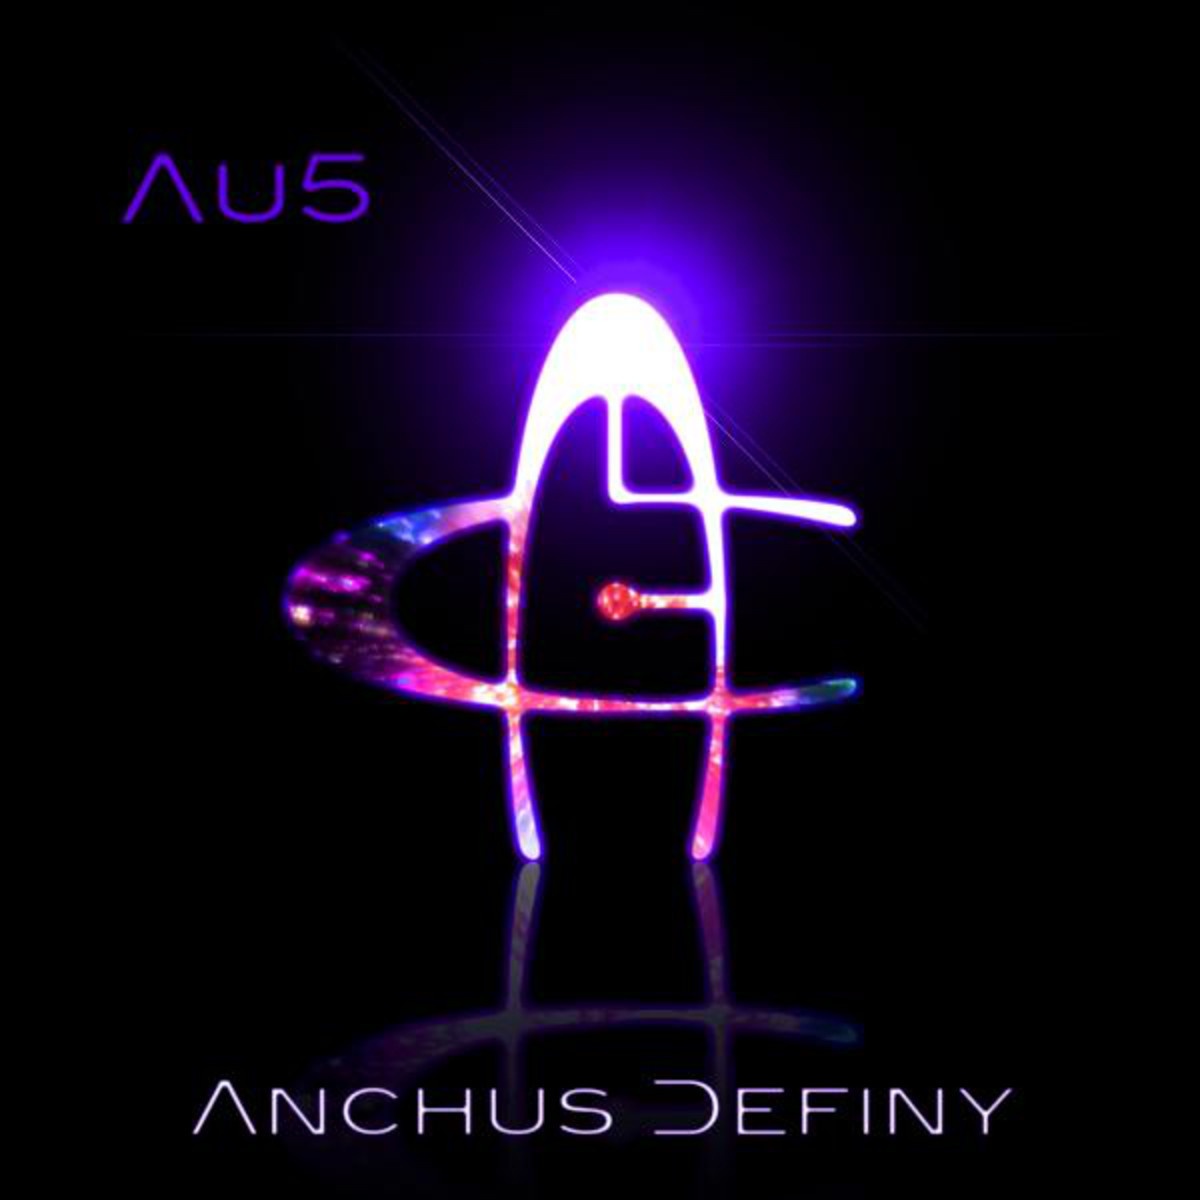 Anchus Definy